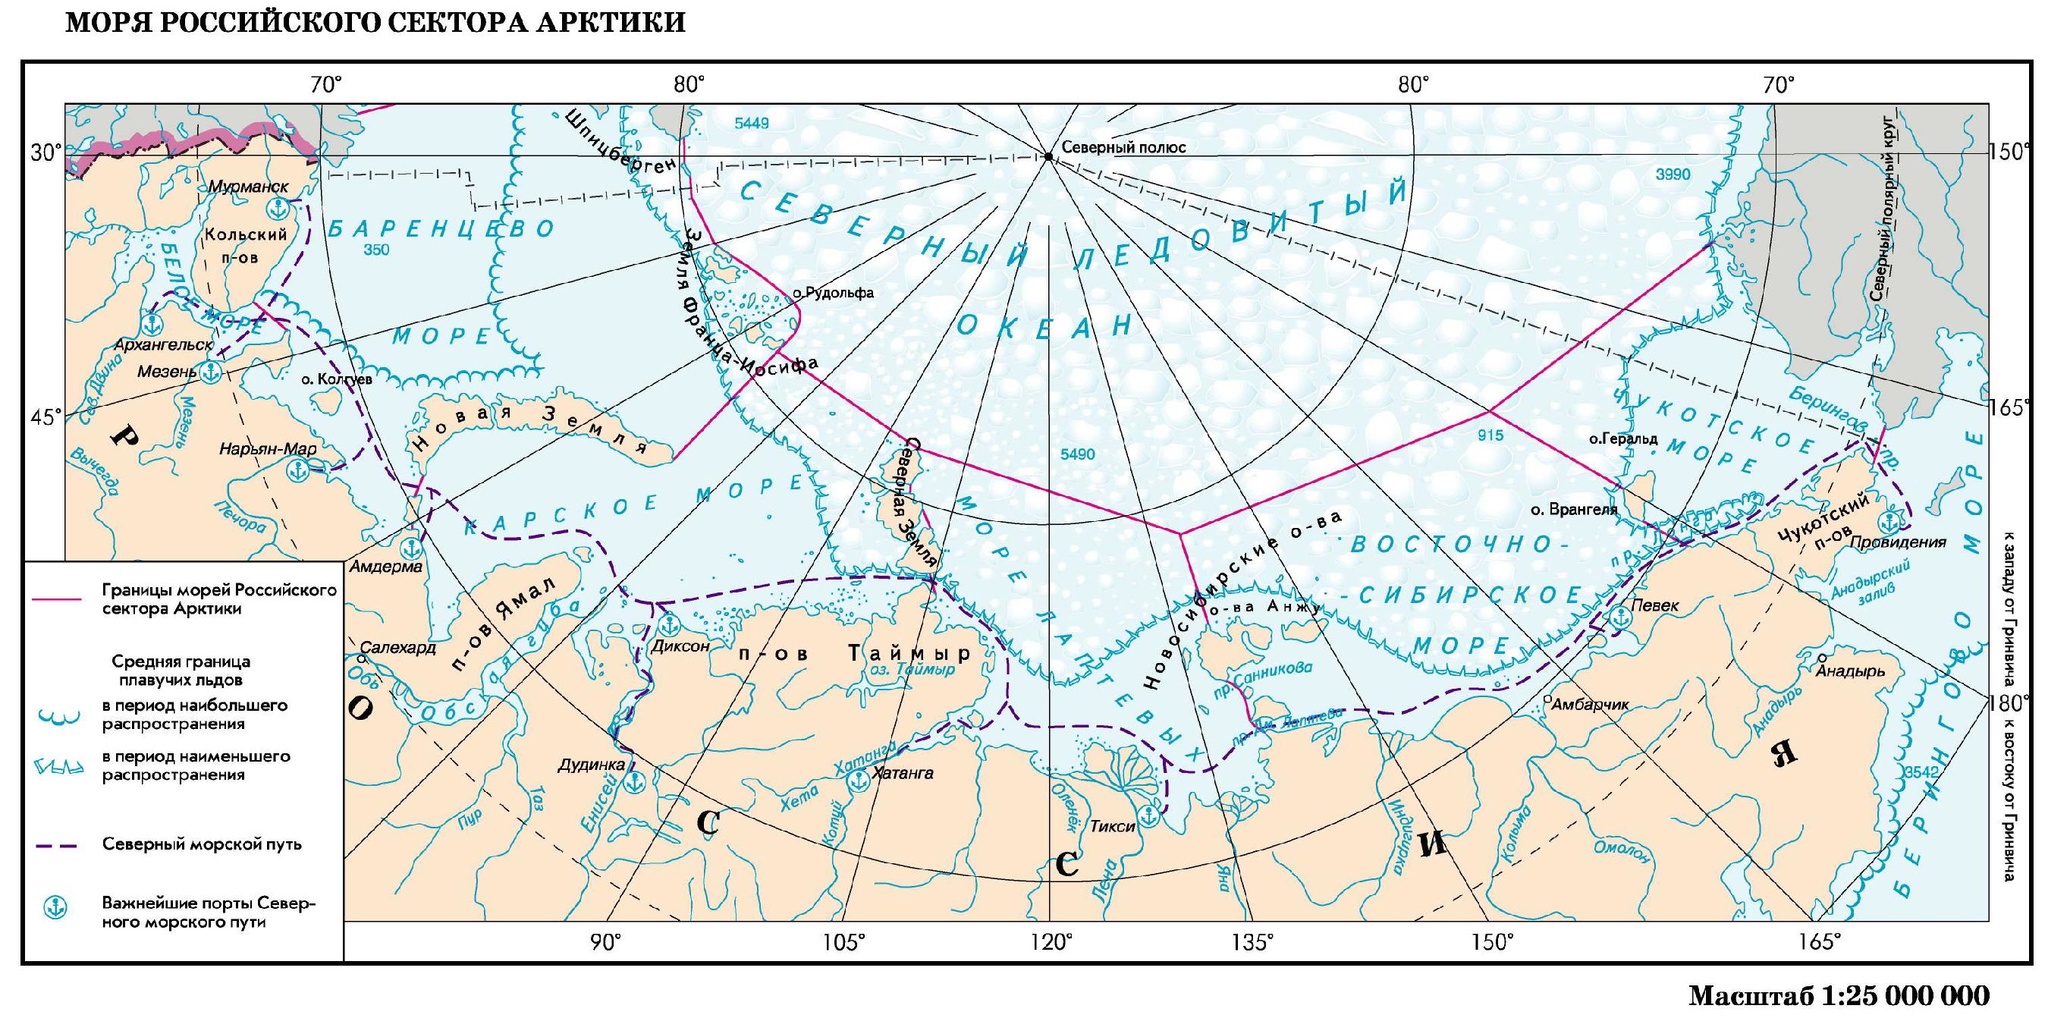 Северный морской путь на карте границы РФ. Арктика Северный морской путь на карте. Граница российского сектора Арктики. Морская граница России в Северном Ледовитом океане на карте.